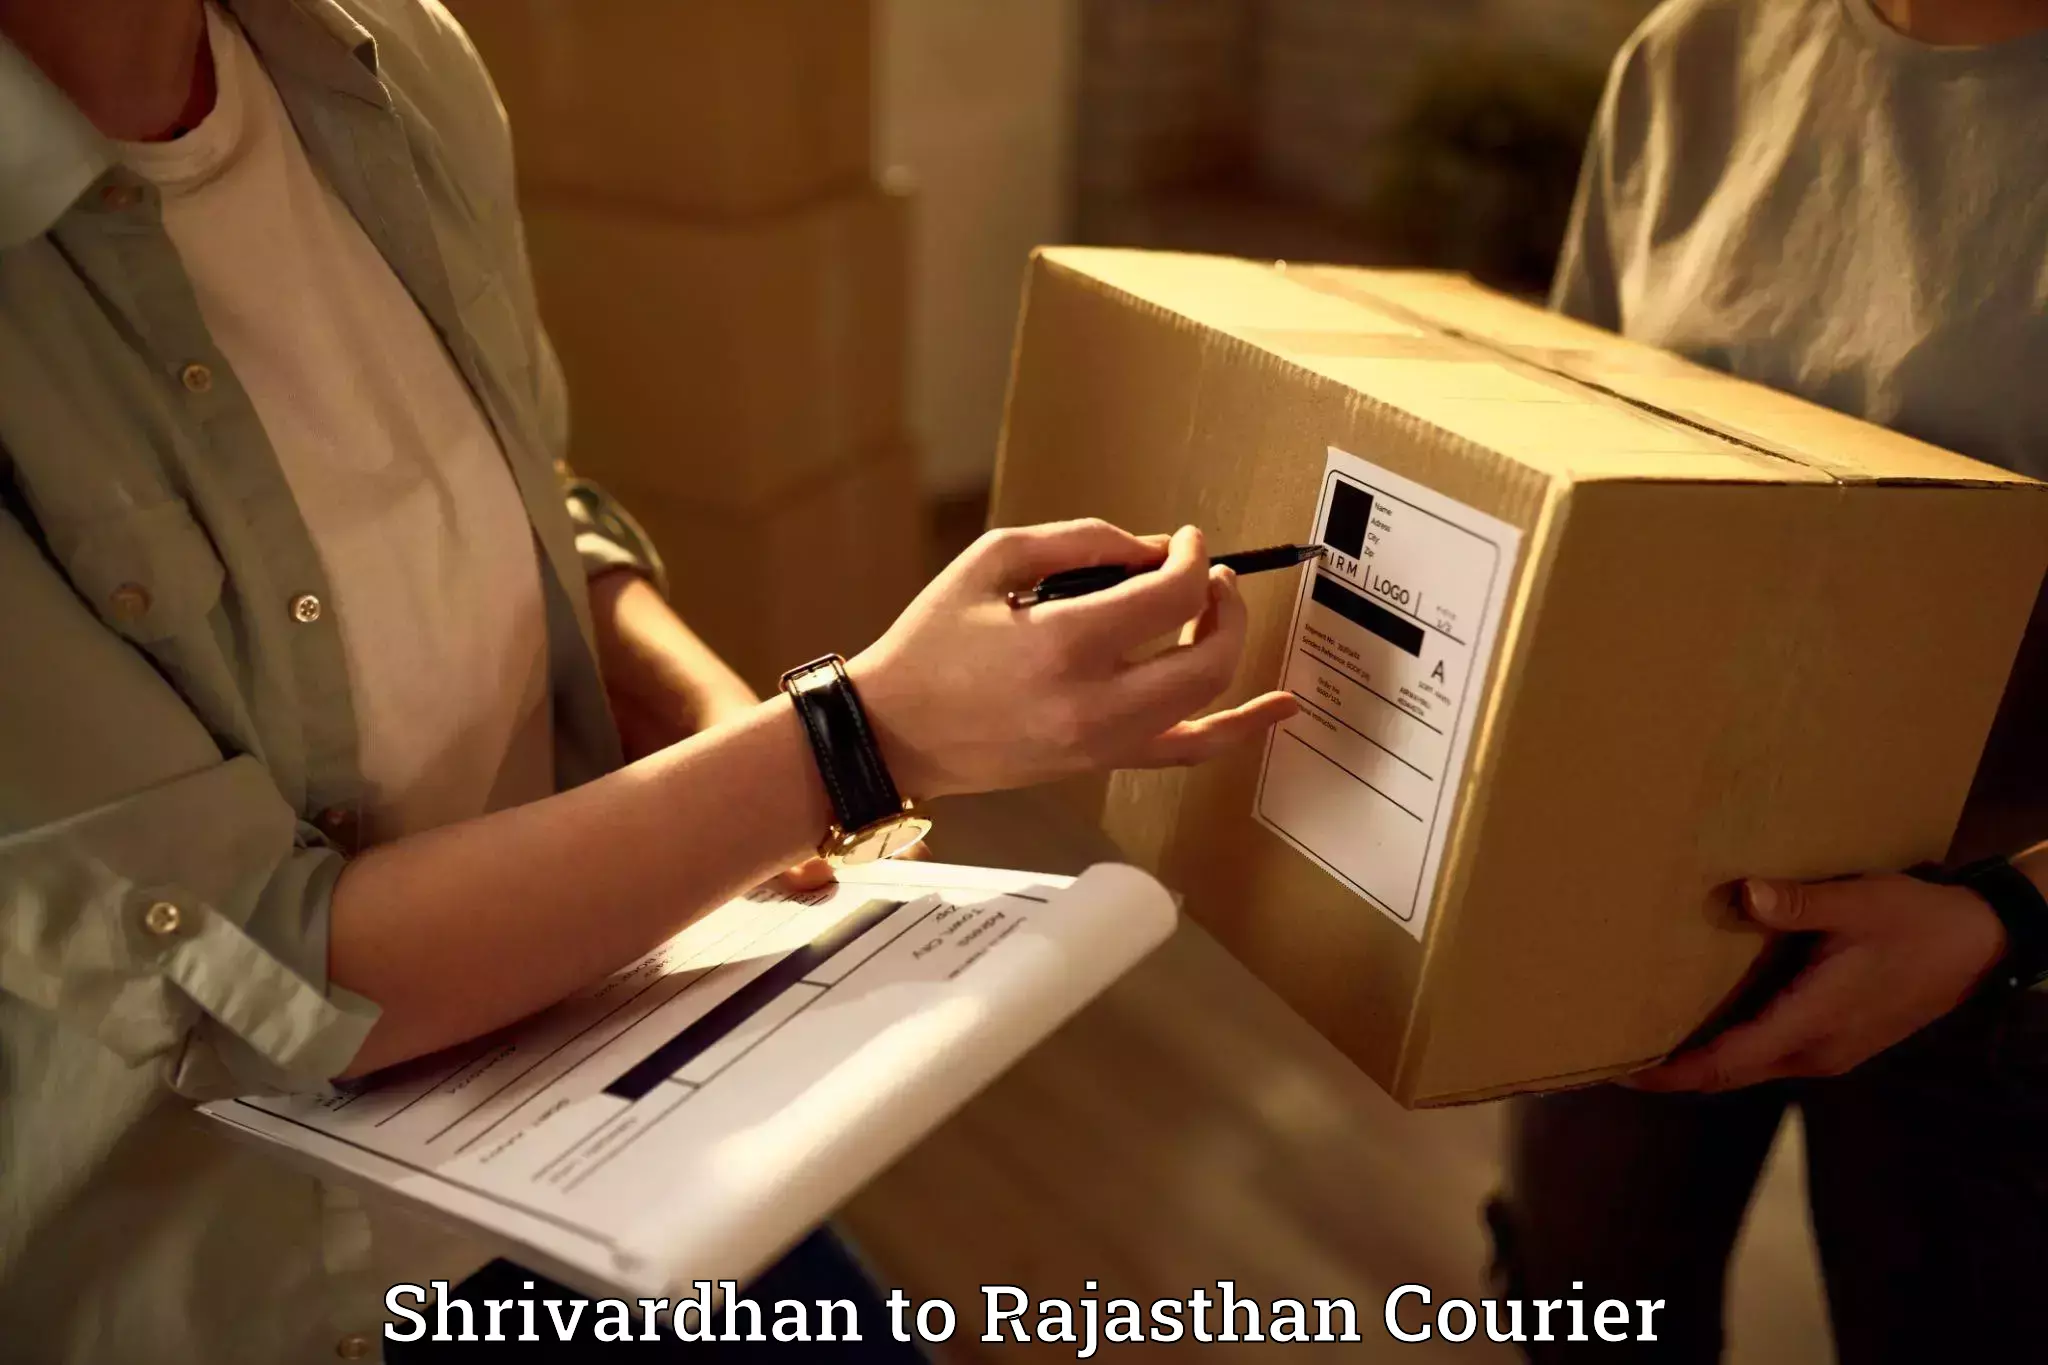 Furniture moving experts Shrivardhan to Rajasthan